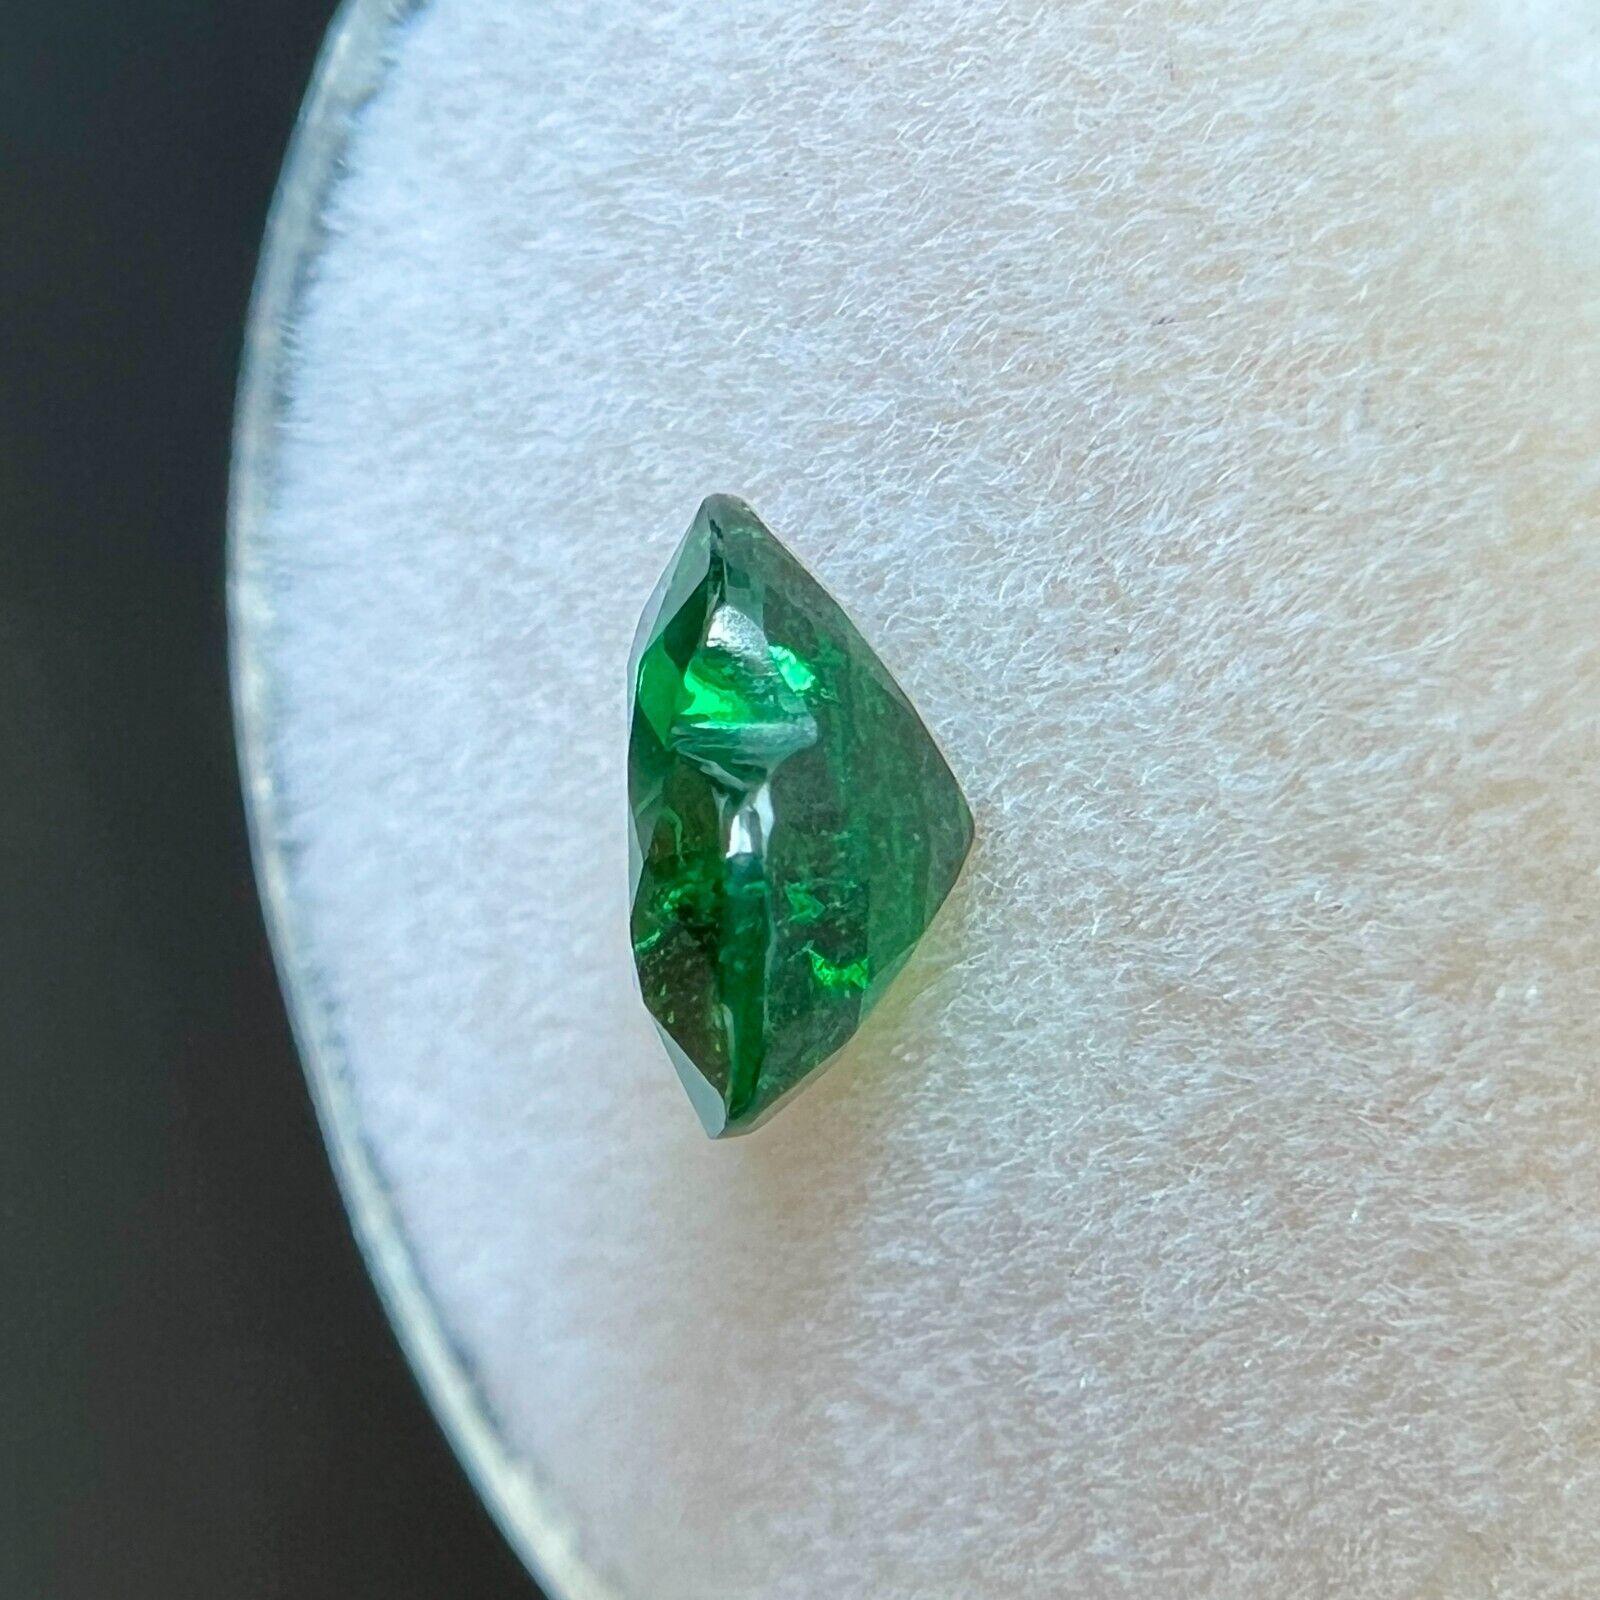 green heart gem